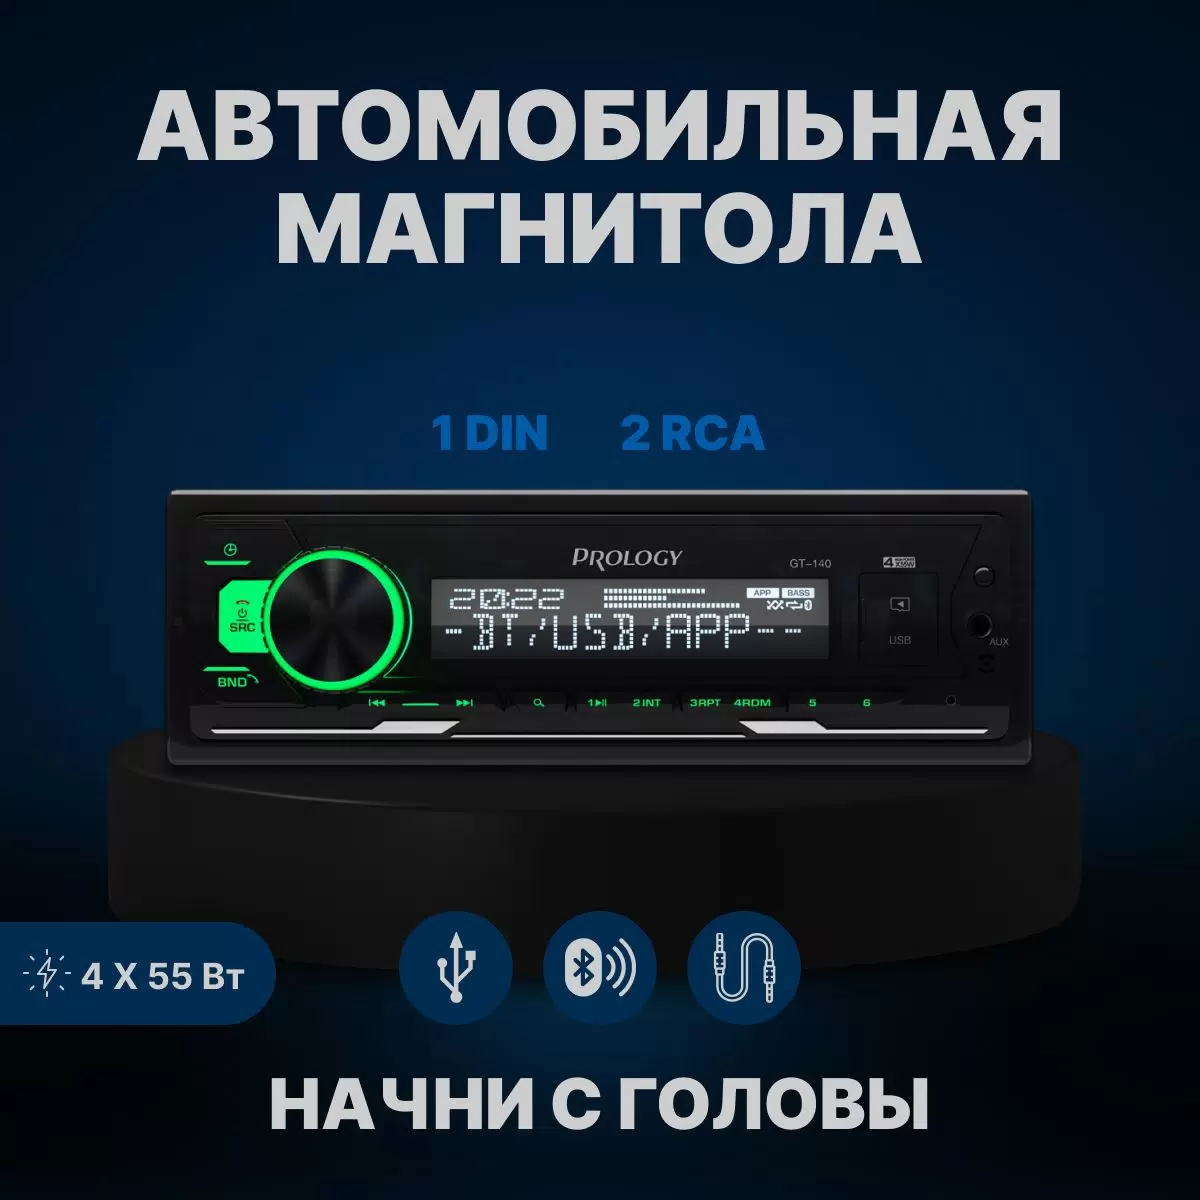 Автомобильная магнитола Prology GT-140 с блютузом (BT) - VLARNIKA в Донецке